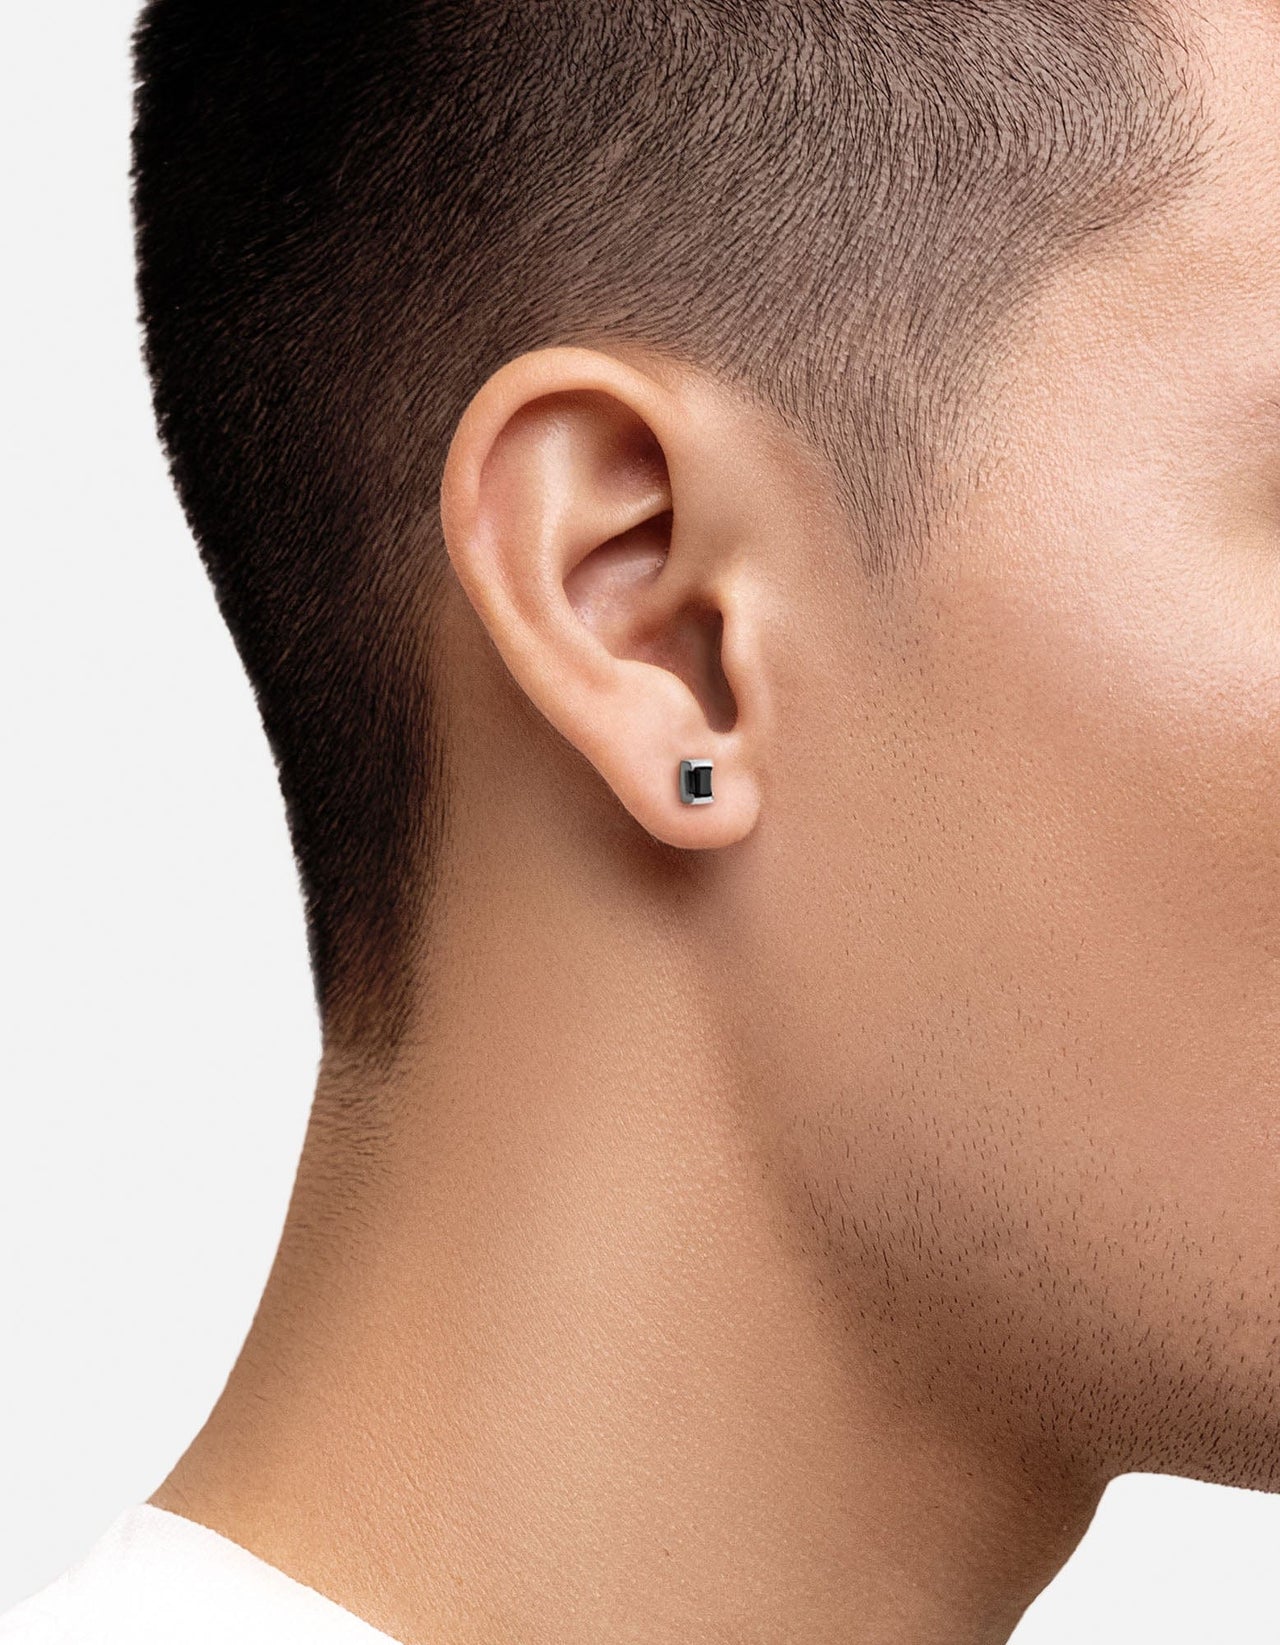 Men's Small Stud Earring 925k Sterling Silver with Diamond | Gold earrings  for men, Small earrings studs, Mens earrings studs